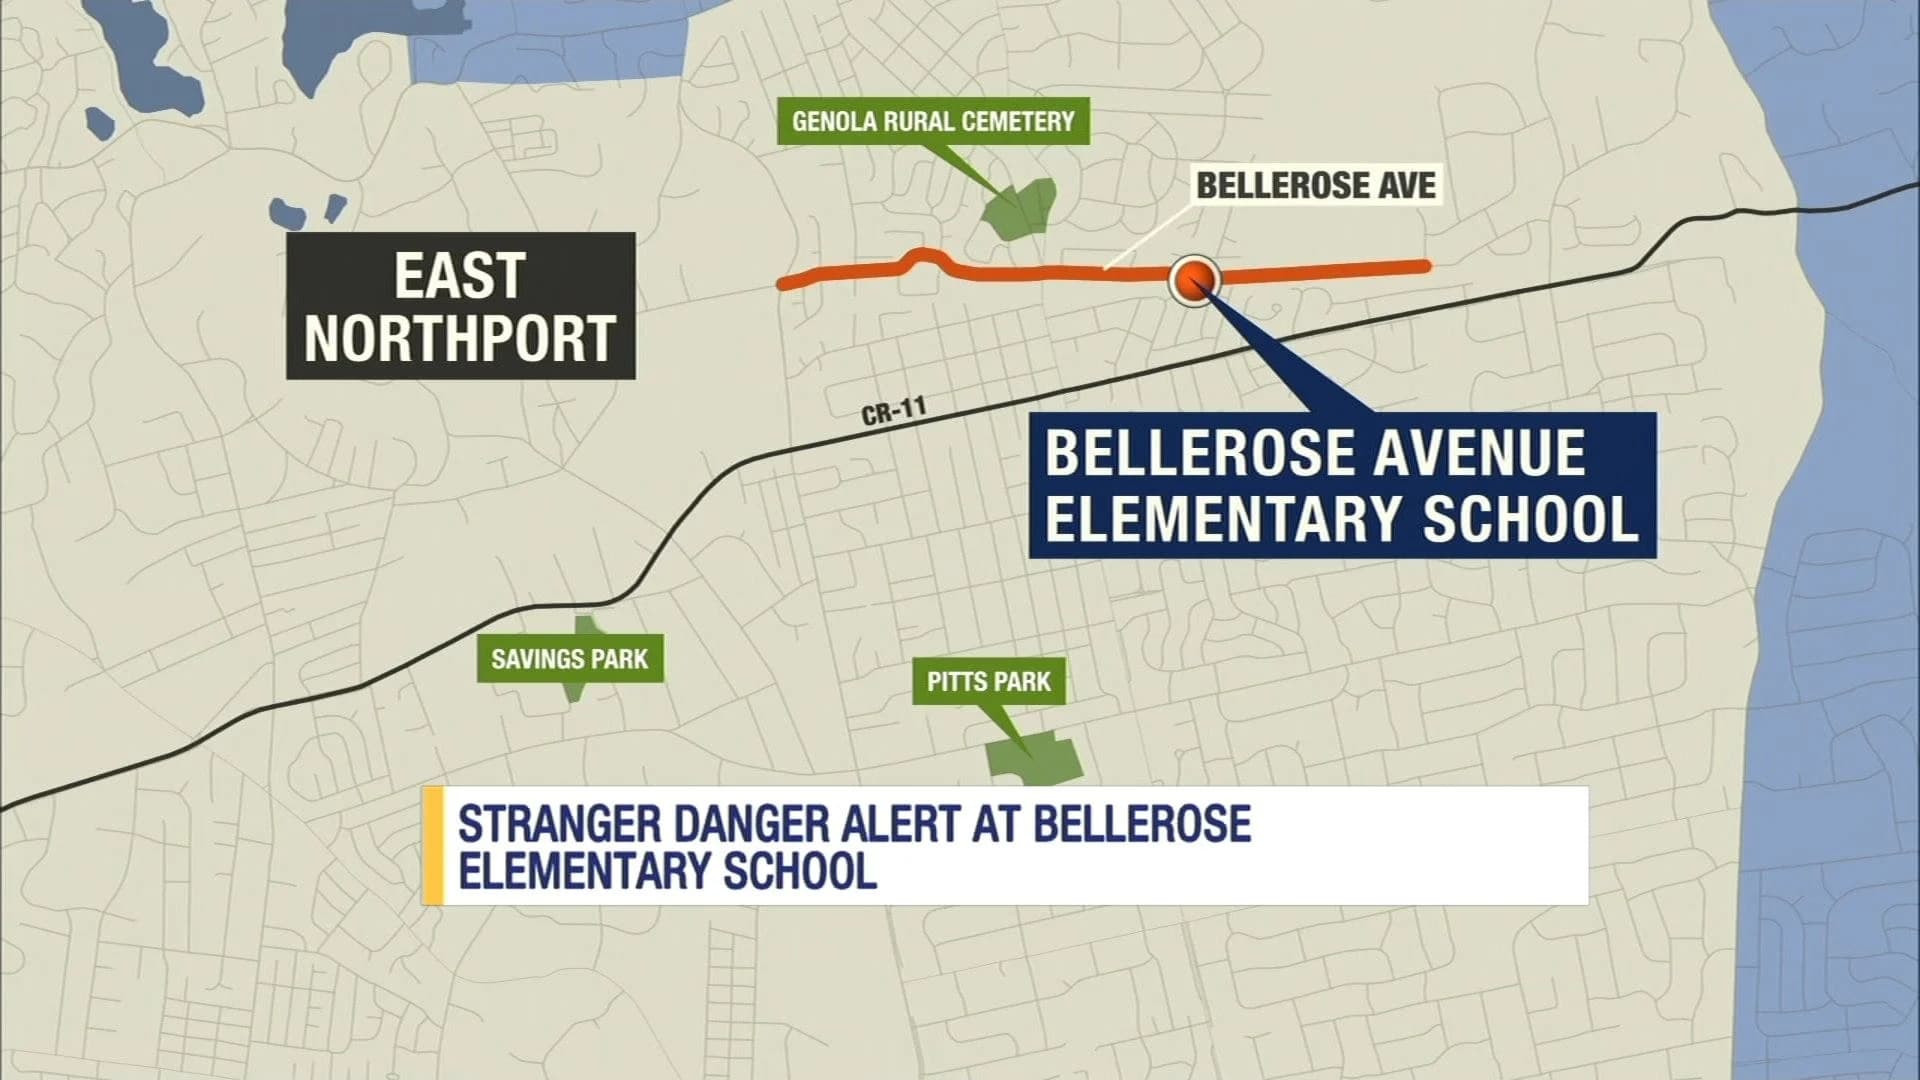 Stranger danger alert sent to parents in East Northport